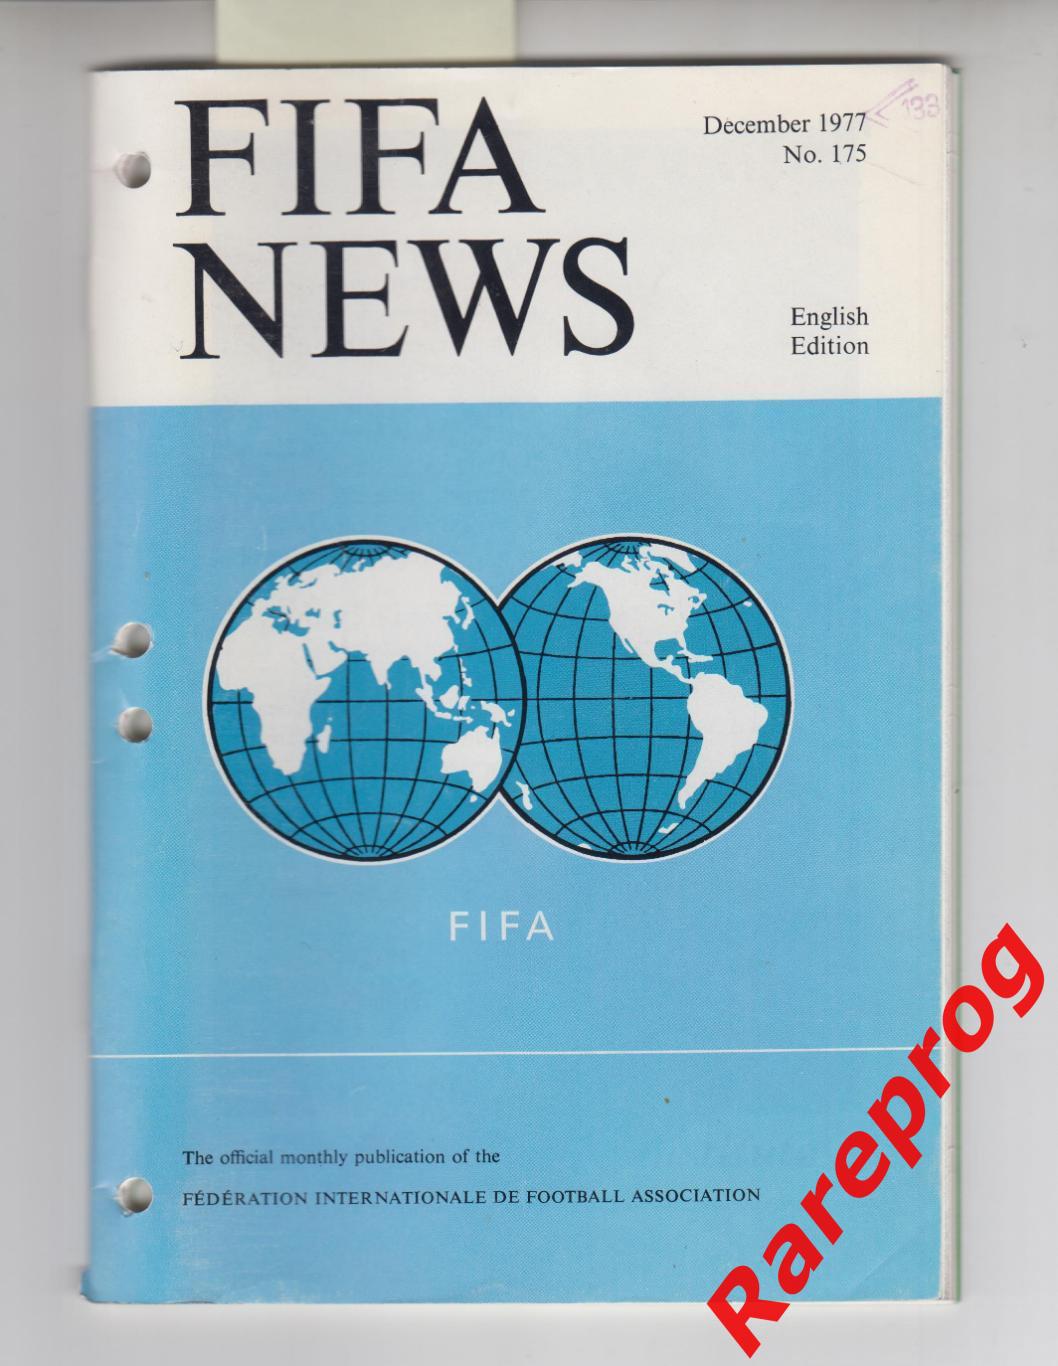 ФИФА НЬЮС НОВОСТИ / FIFA NEWS № 172 1977 - Динамо Киев 50 лет